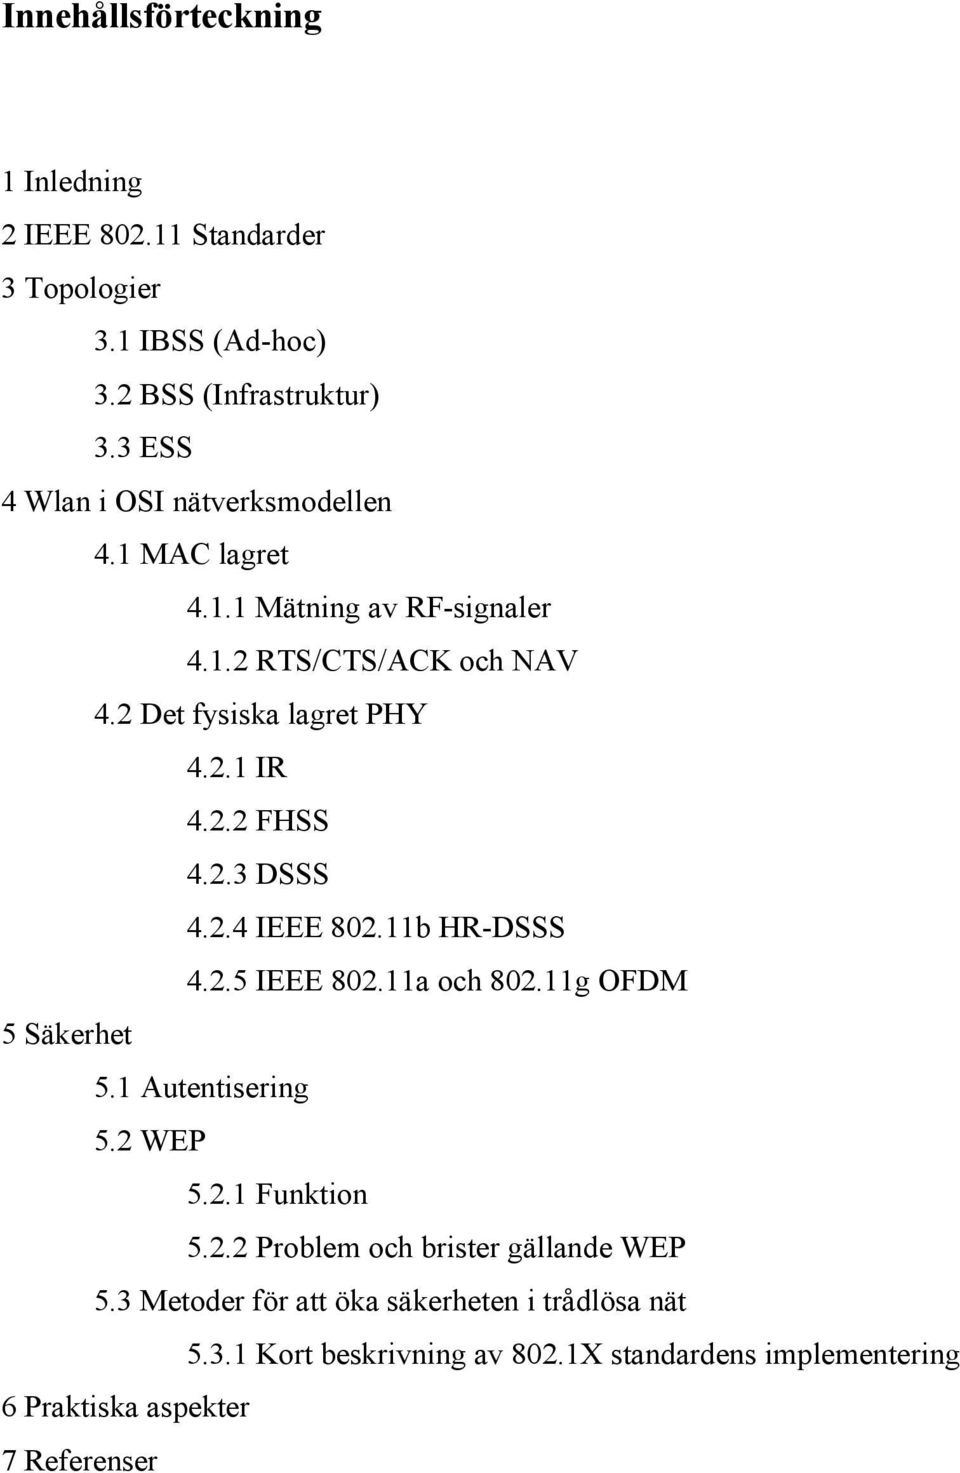 2.2 FHSS 4. 2.3 DSSS 4.2.4 IEEE 802.11b HR- DSSS 4.2.5 IEEE 802.11a och 802.11g OFDM 5 Säkerhet 5.1 Autentisering 5.2 WEP 5.2.1 Funktion 5.2.2 Problem och brister gällan d e WEP 5.